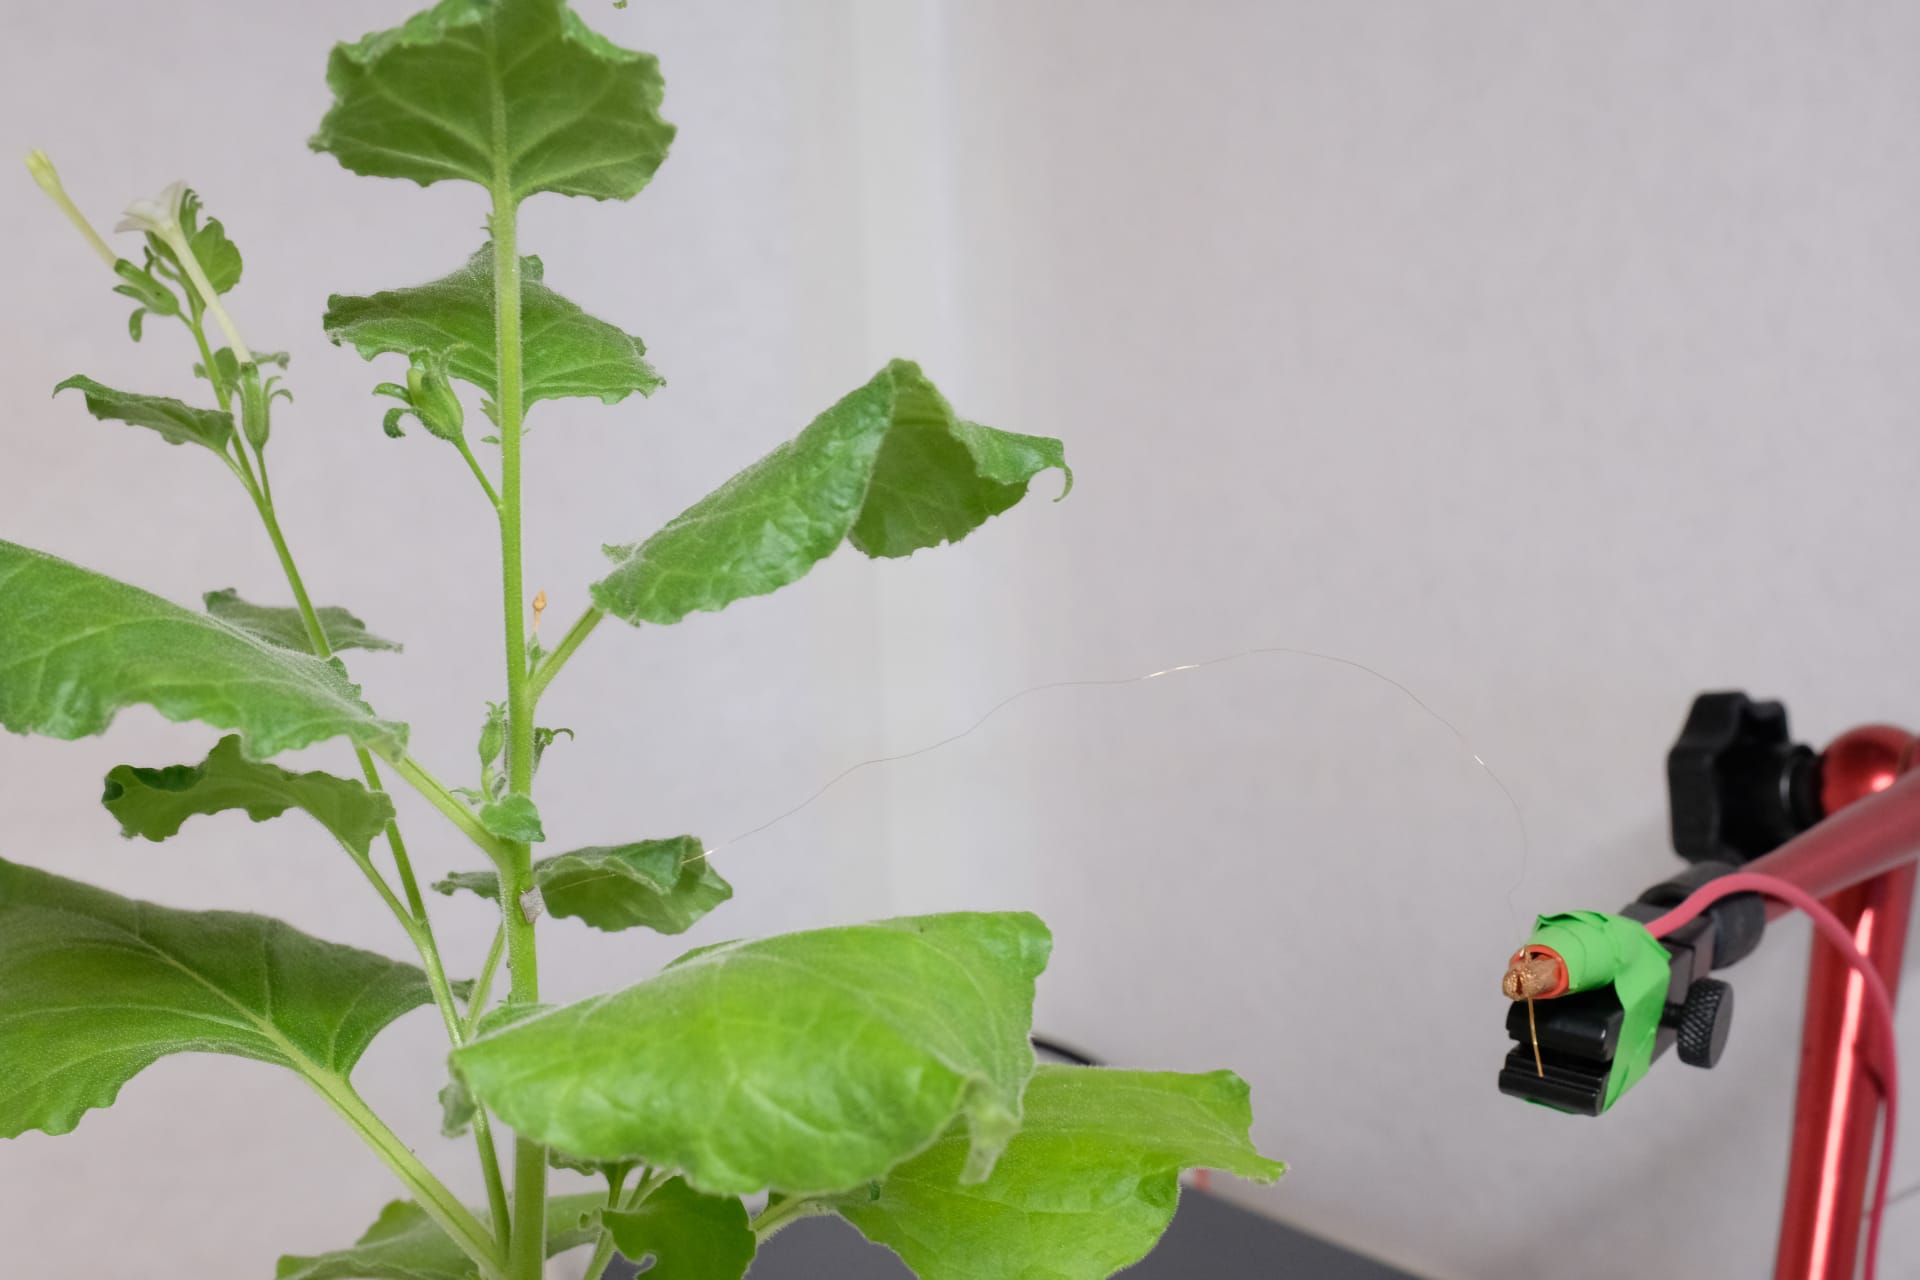 باحثون من سنغافورة يطورون أداة يمكنها "التواصل" مع النباتات..كيف؟ 